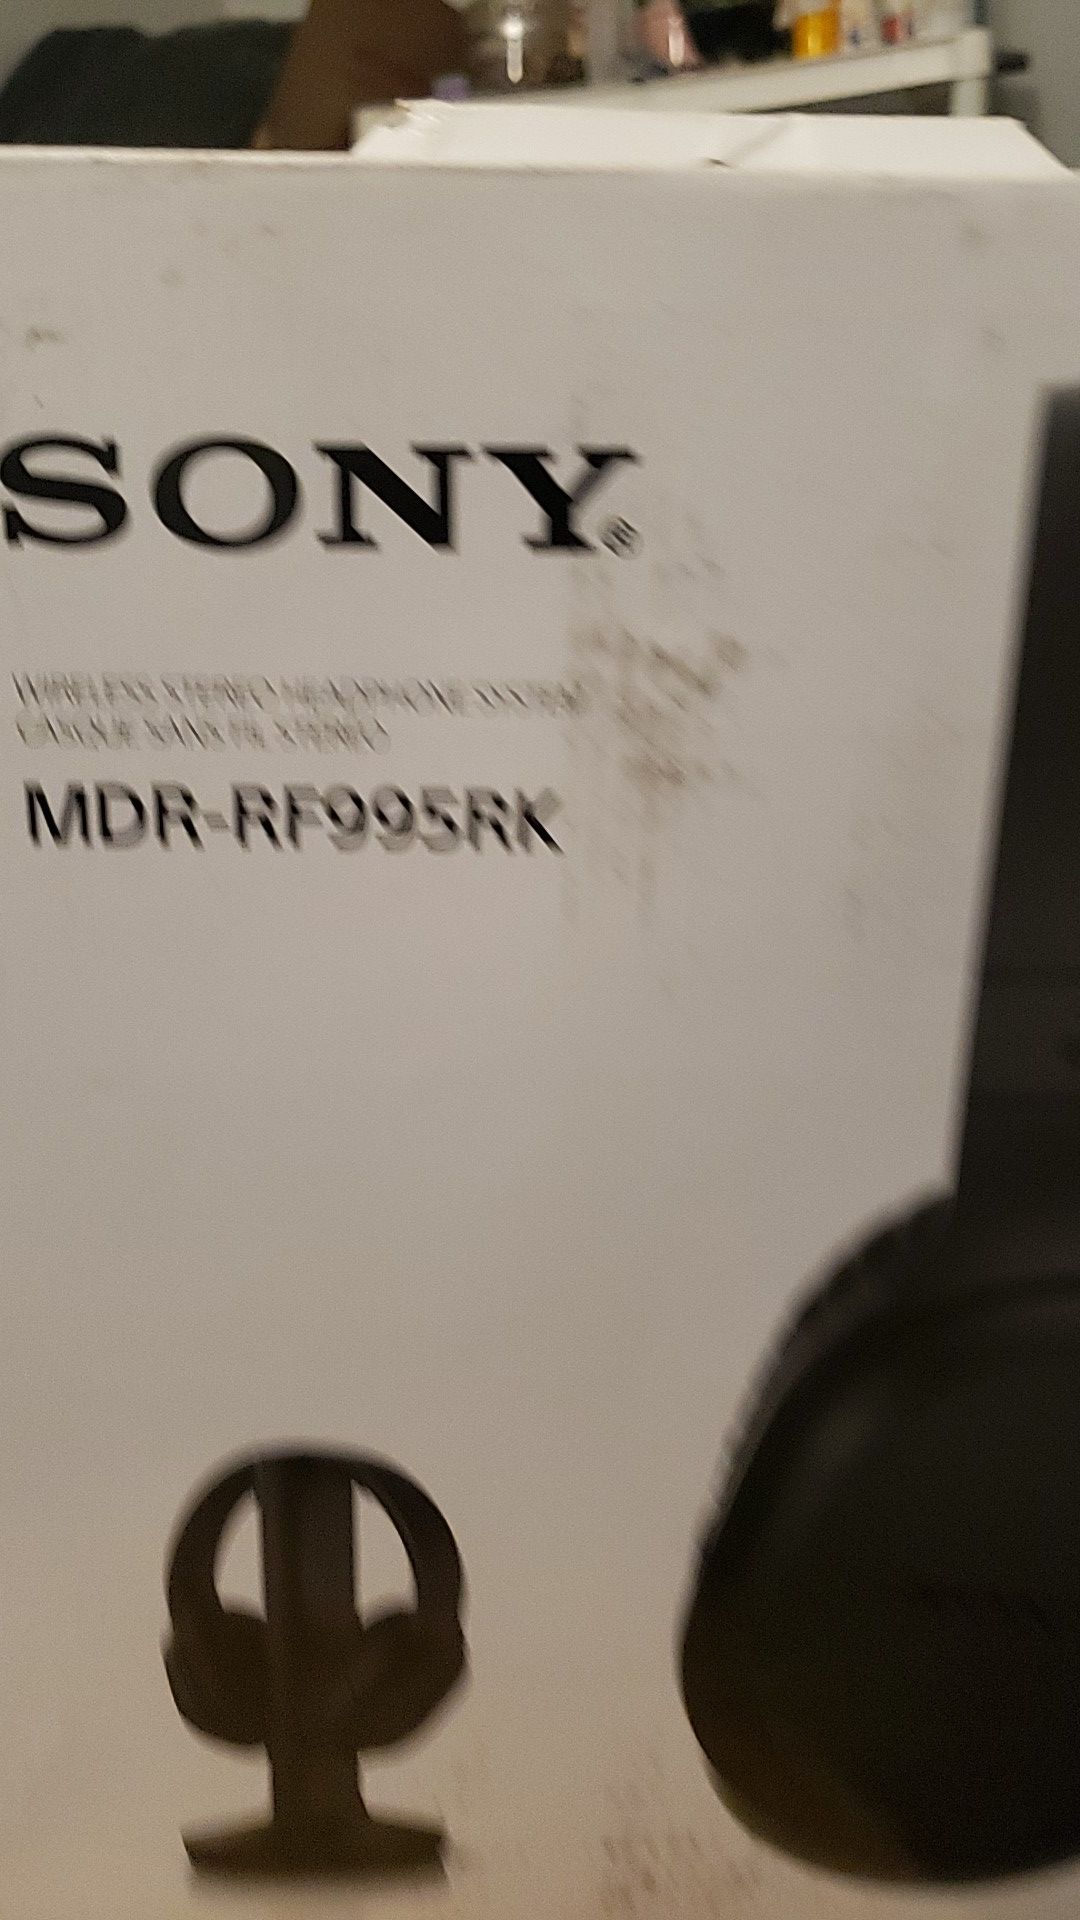 SONY MDR-RF995RK